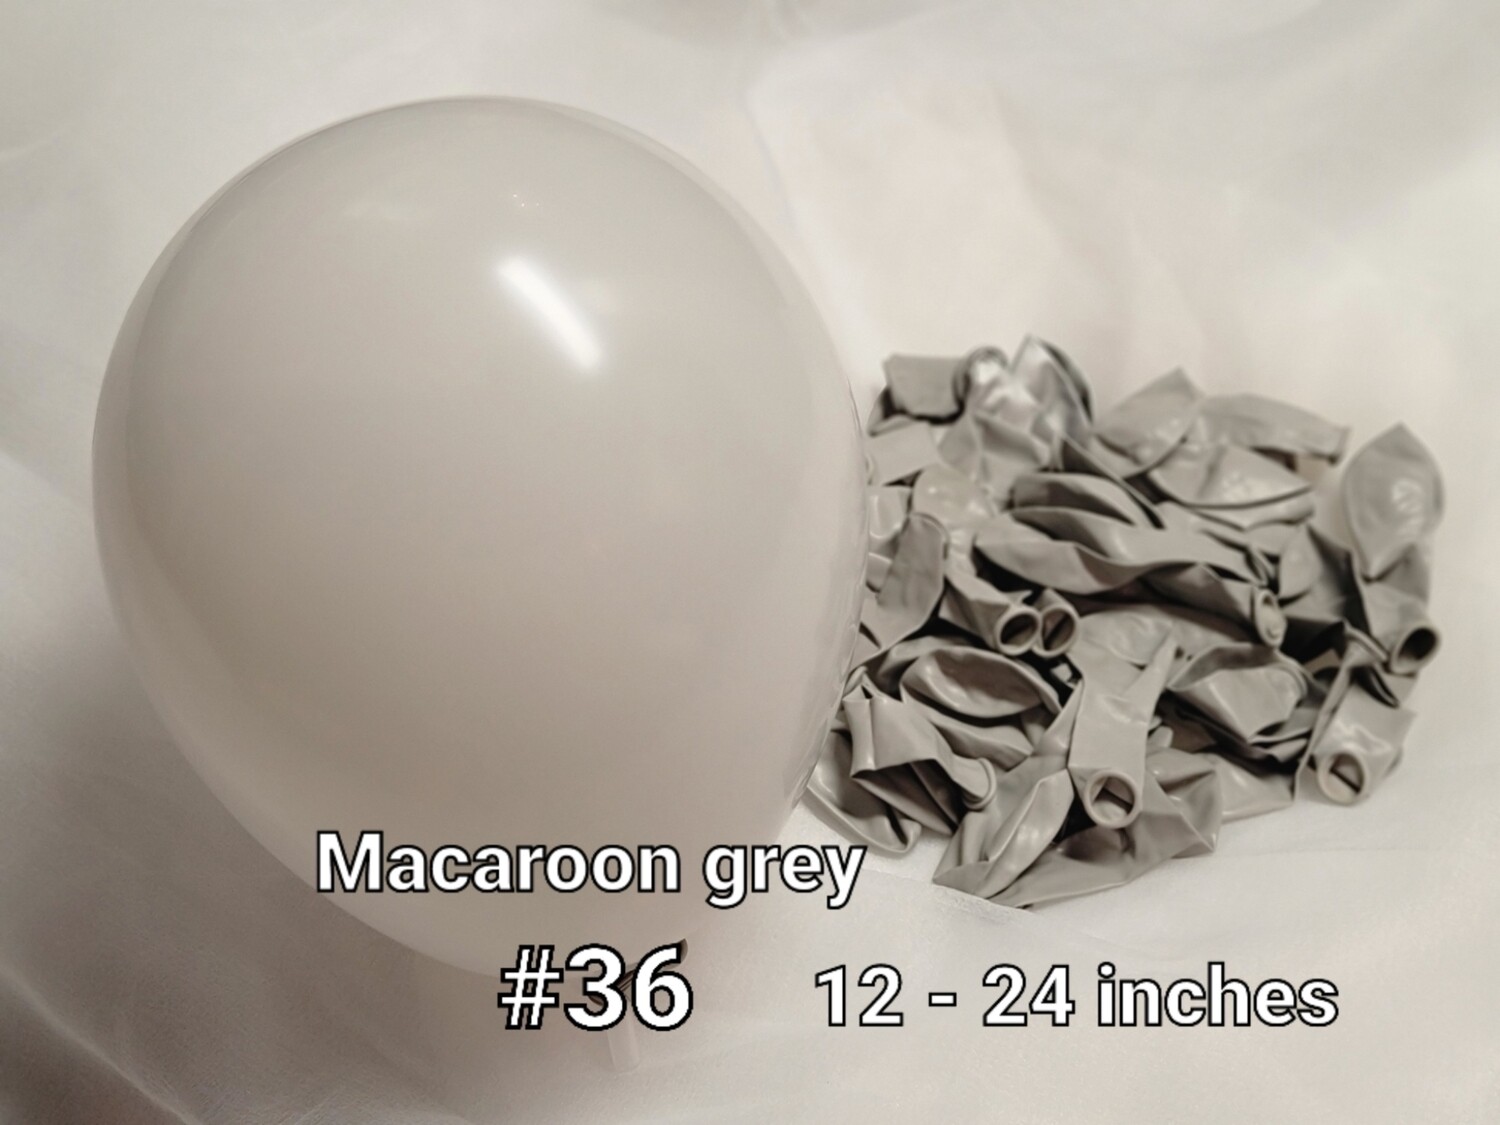 Macaroon grey balloon